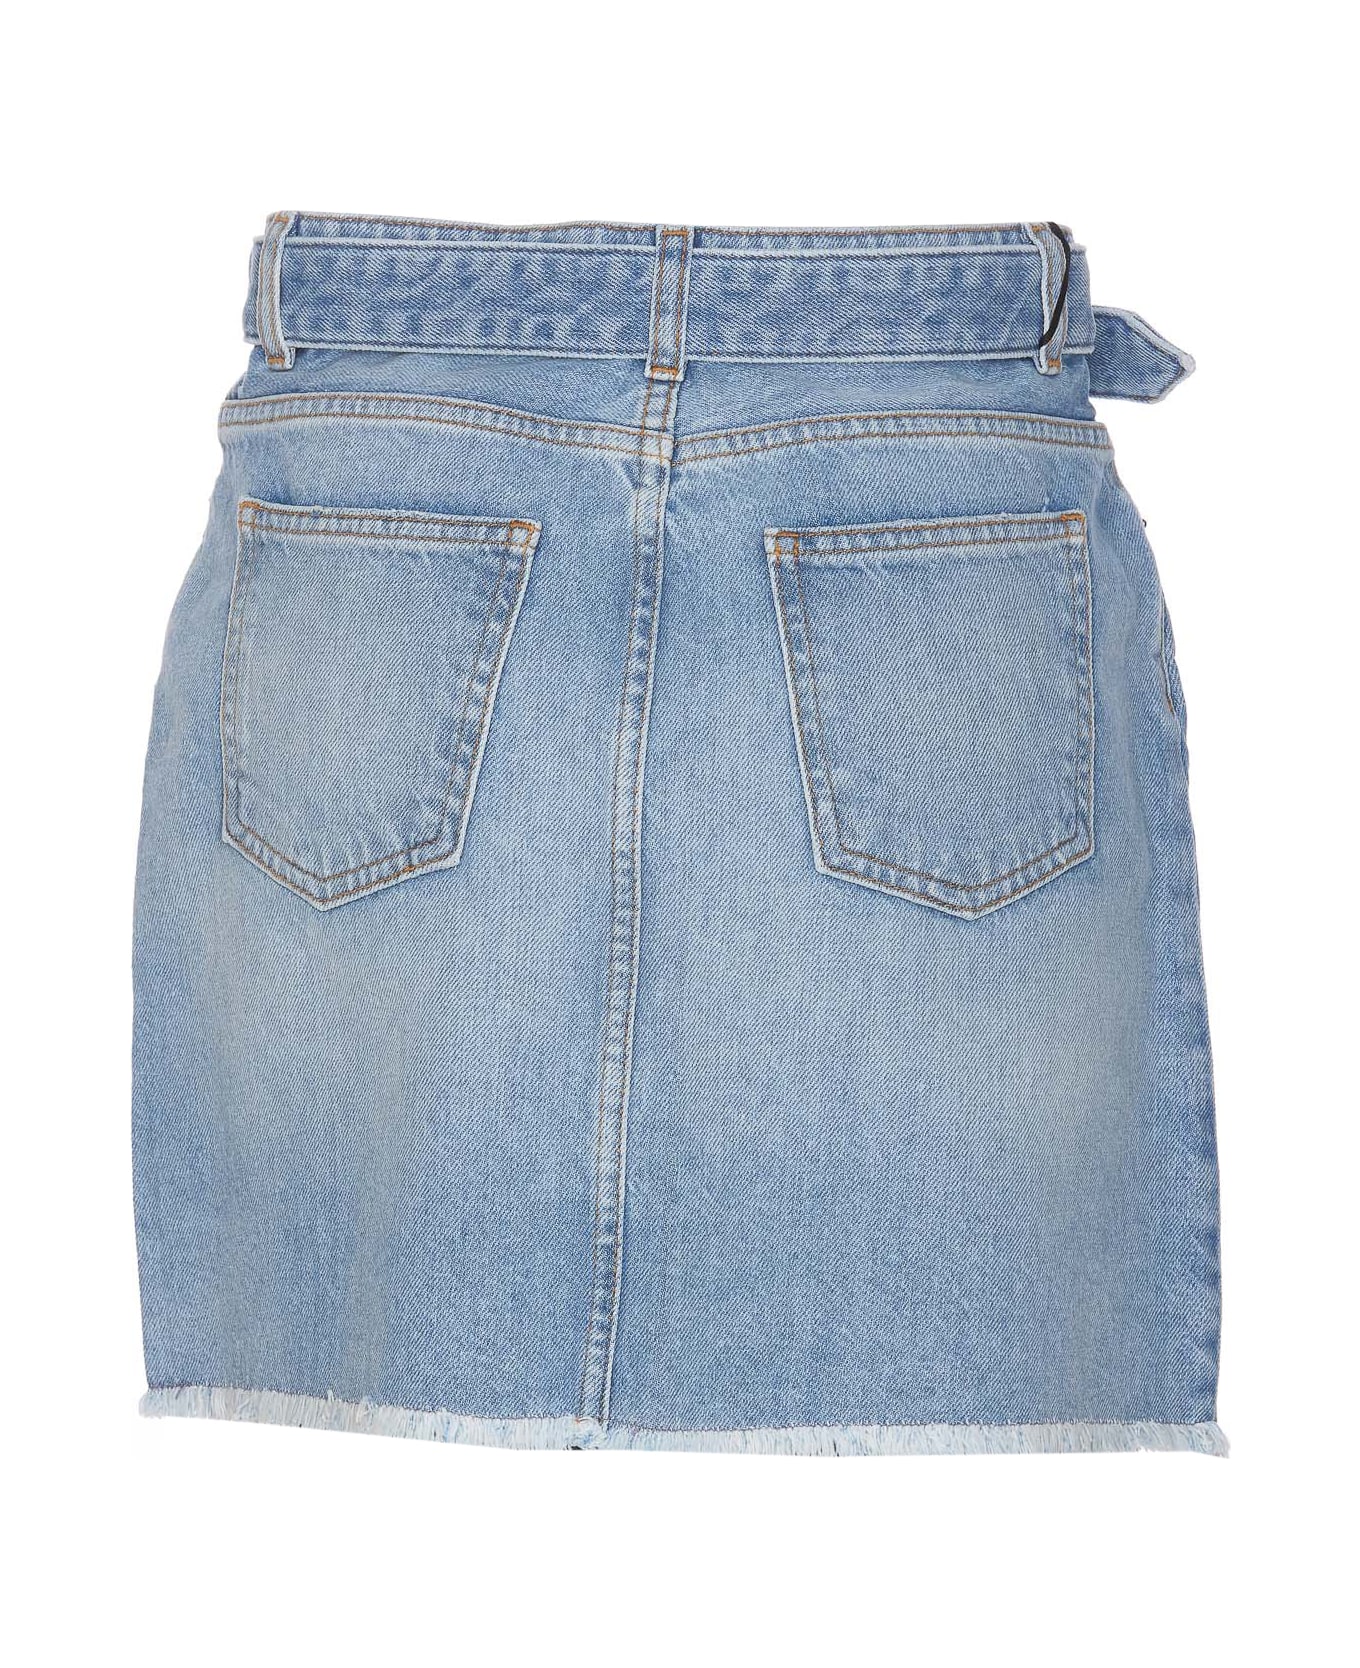 TwinSet Denim Mini Skirt With Oval T Belt - Blue スカート